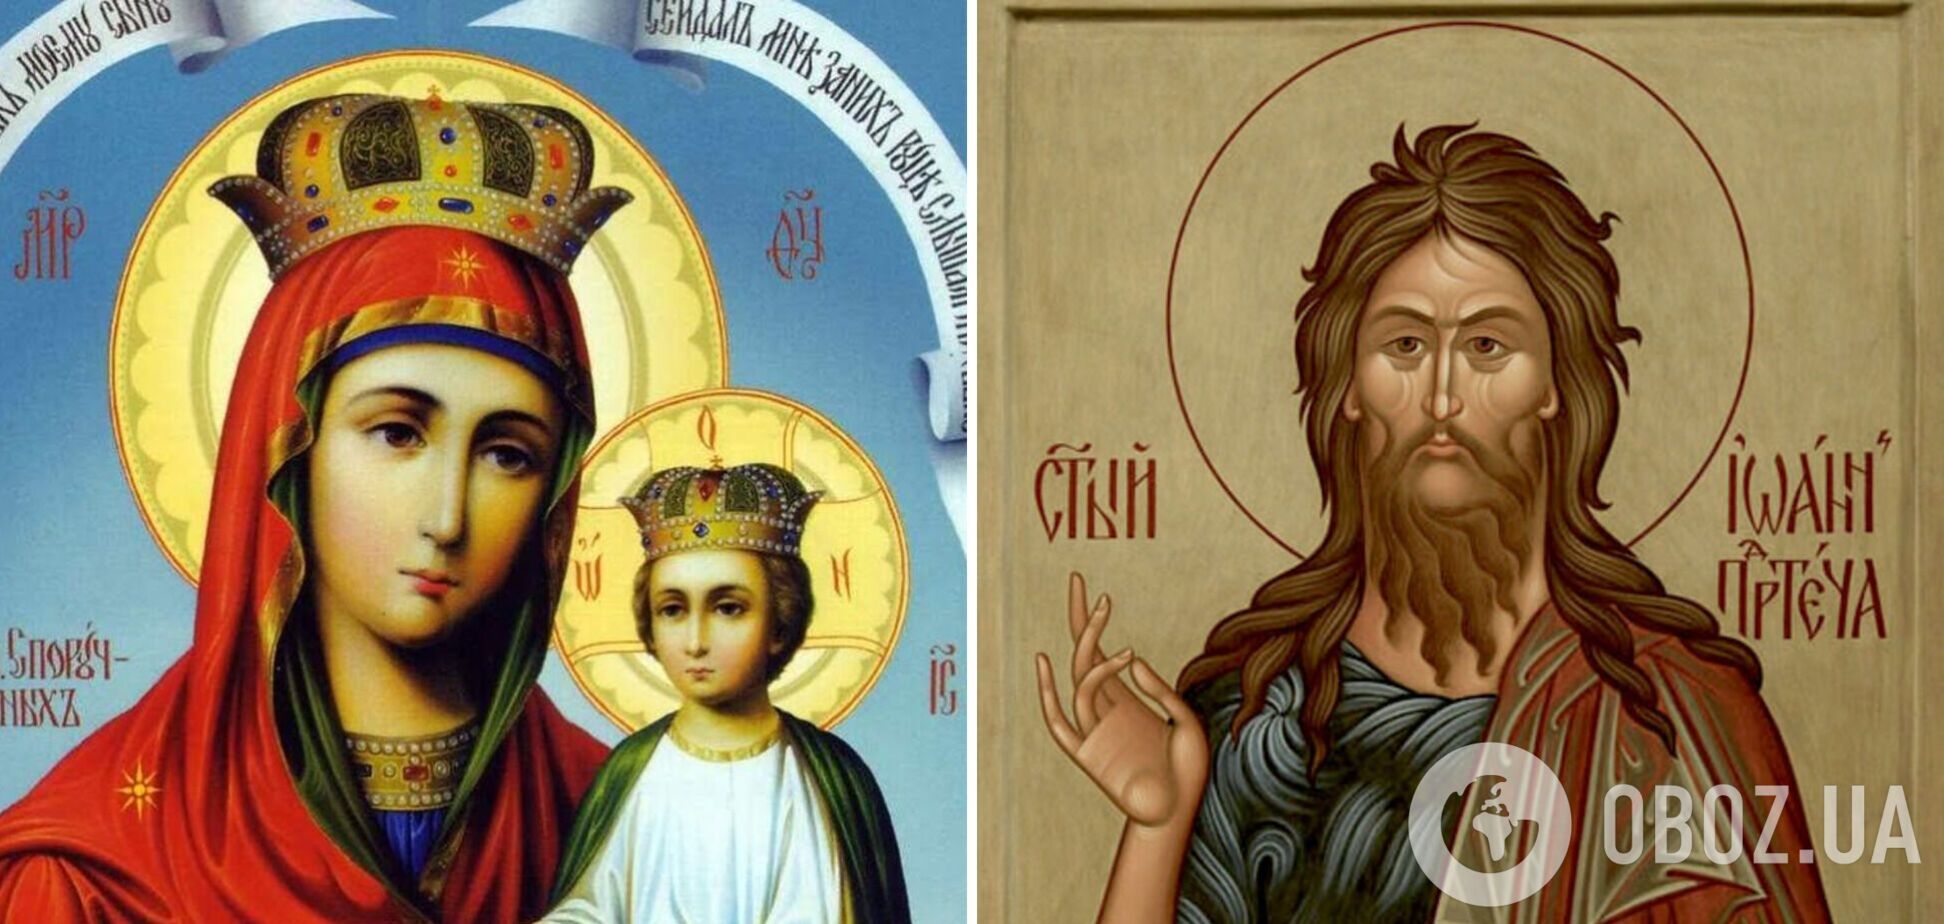 Икона Божьей Матери 'Споручница грешных' / Икона Пророка Иоанна Предтечи